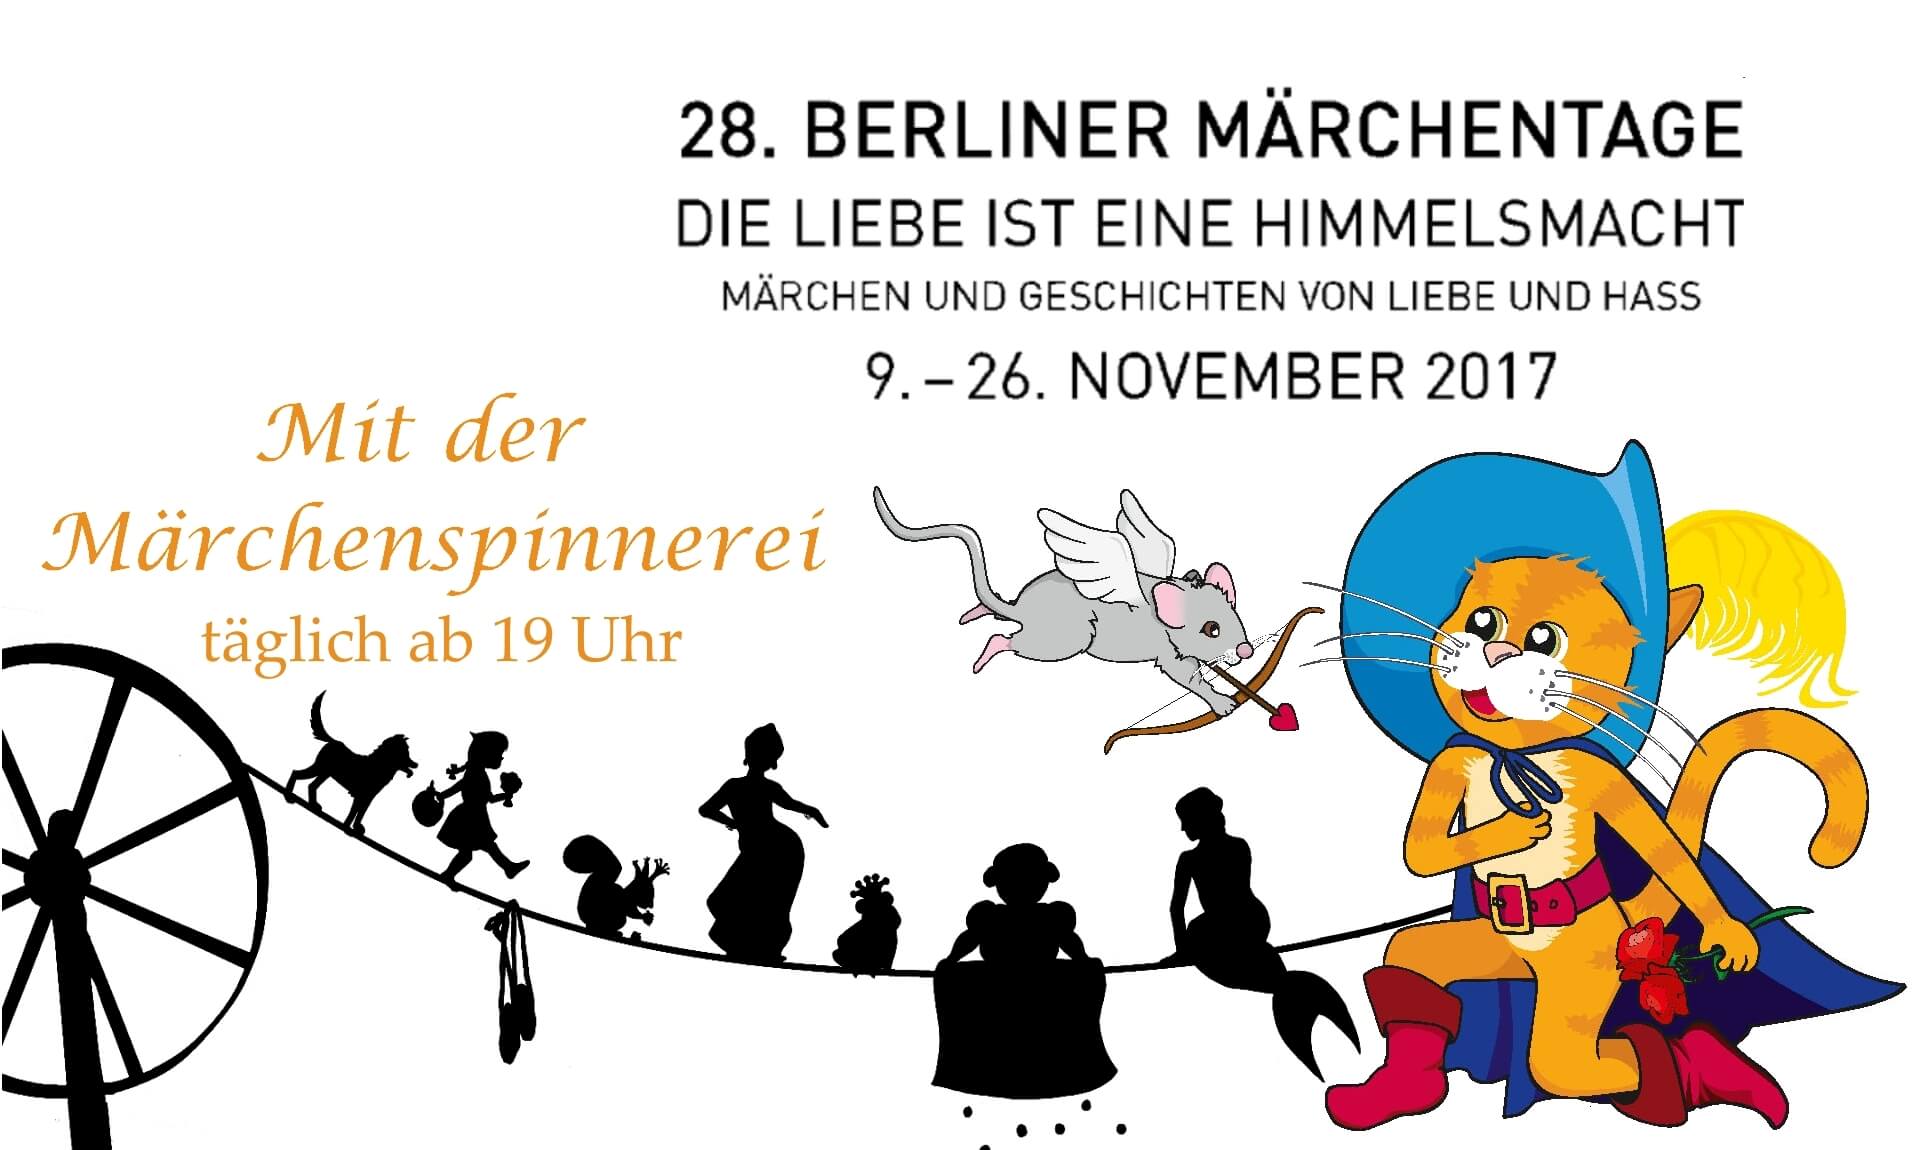 28. Berliner Märchentage (Märchenland e.V.) - täglich bei der Märchenspinnerei